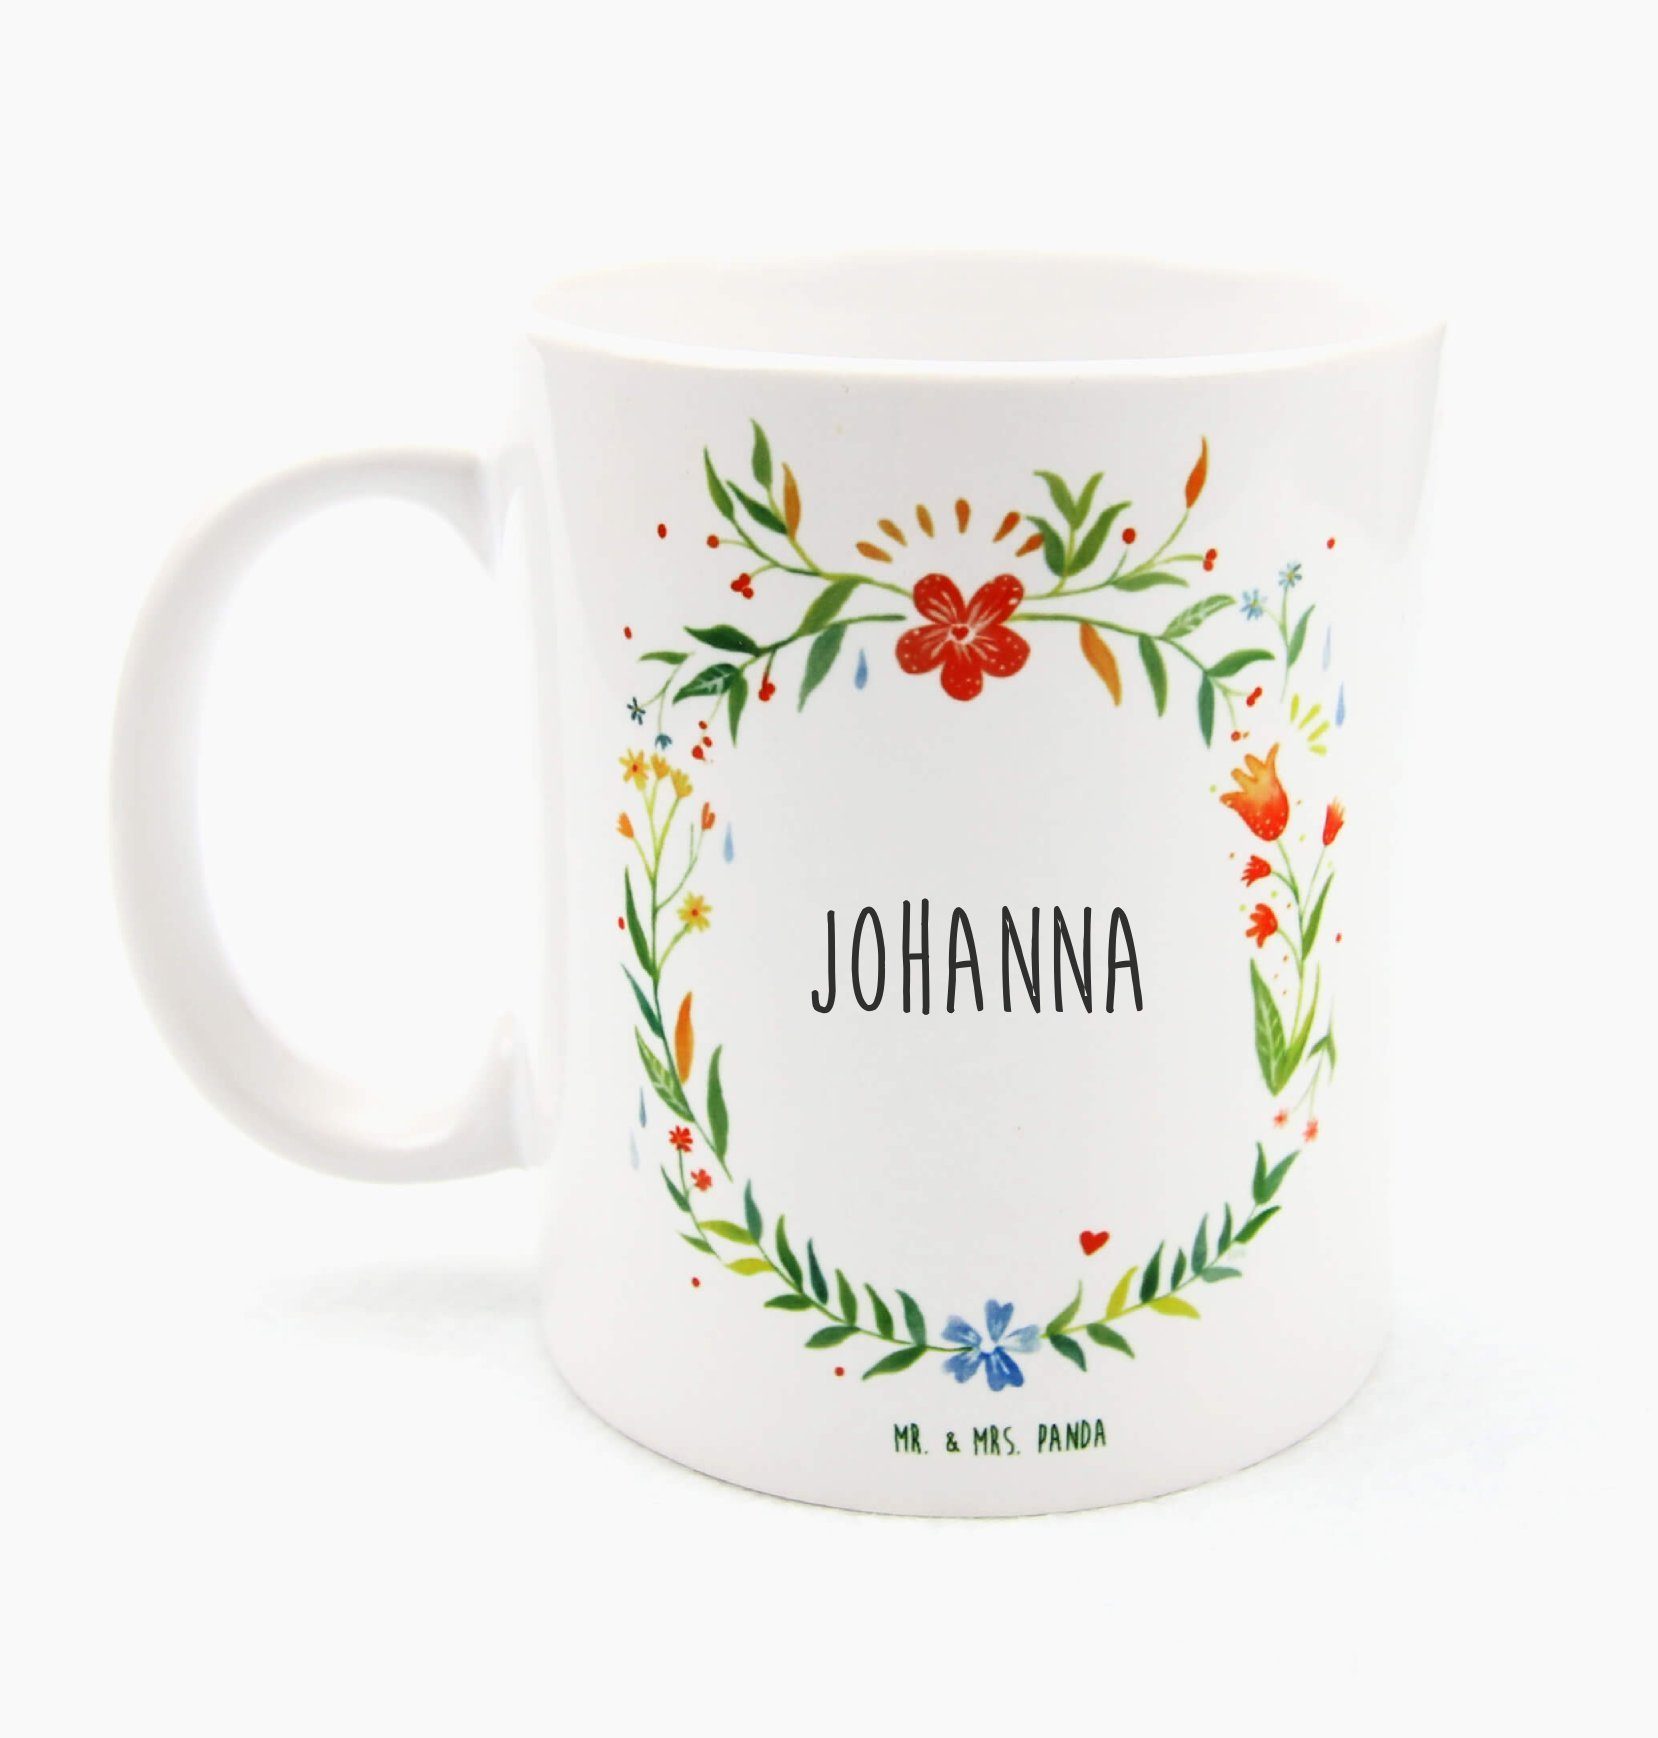 Johanna Keramik - Kaffeeb, Mr. & Becher, Panda Kaffeetasse, Tasse Geschenk, Teebecher, Teetasse, Mrs.